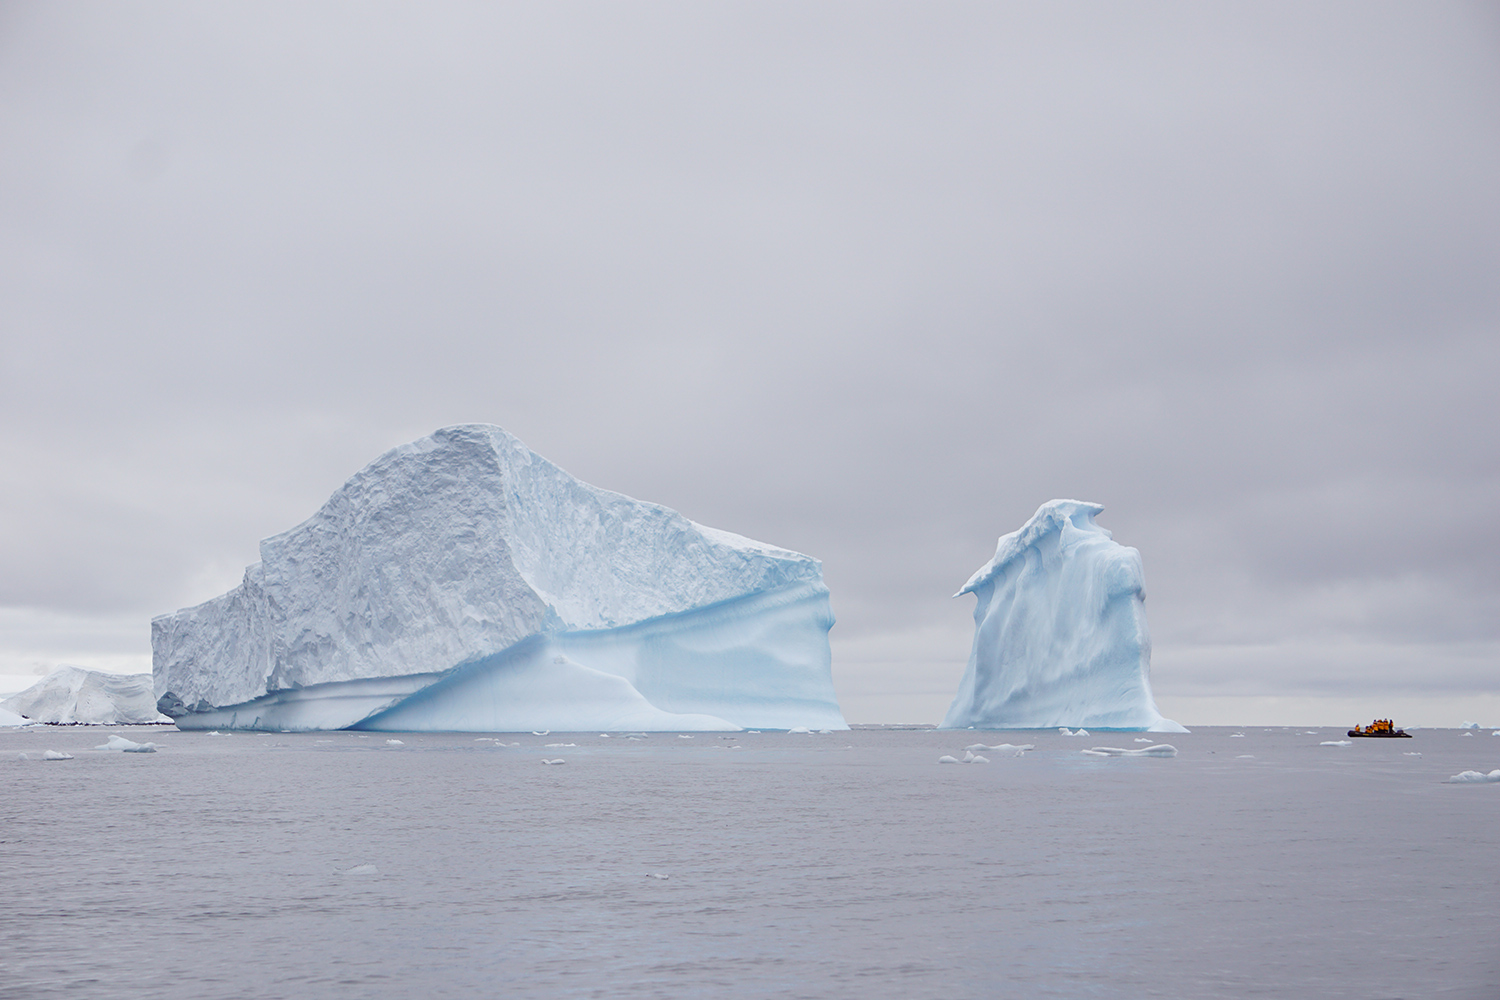 kayak near pieces of antarctic iceberg